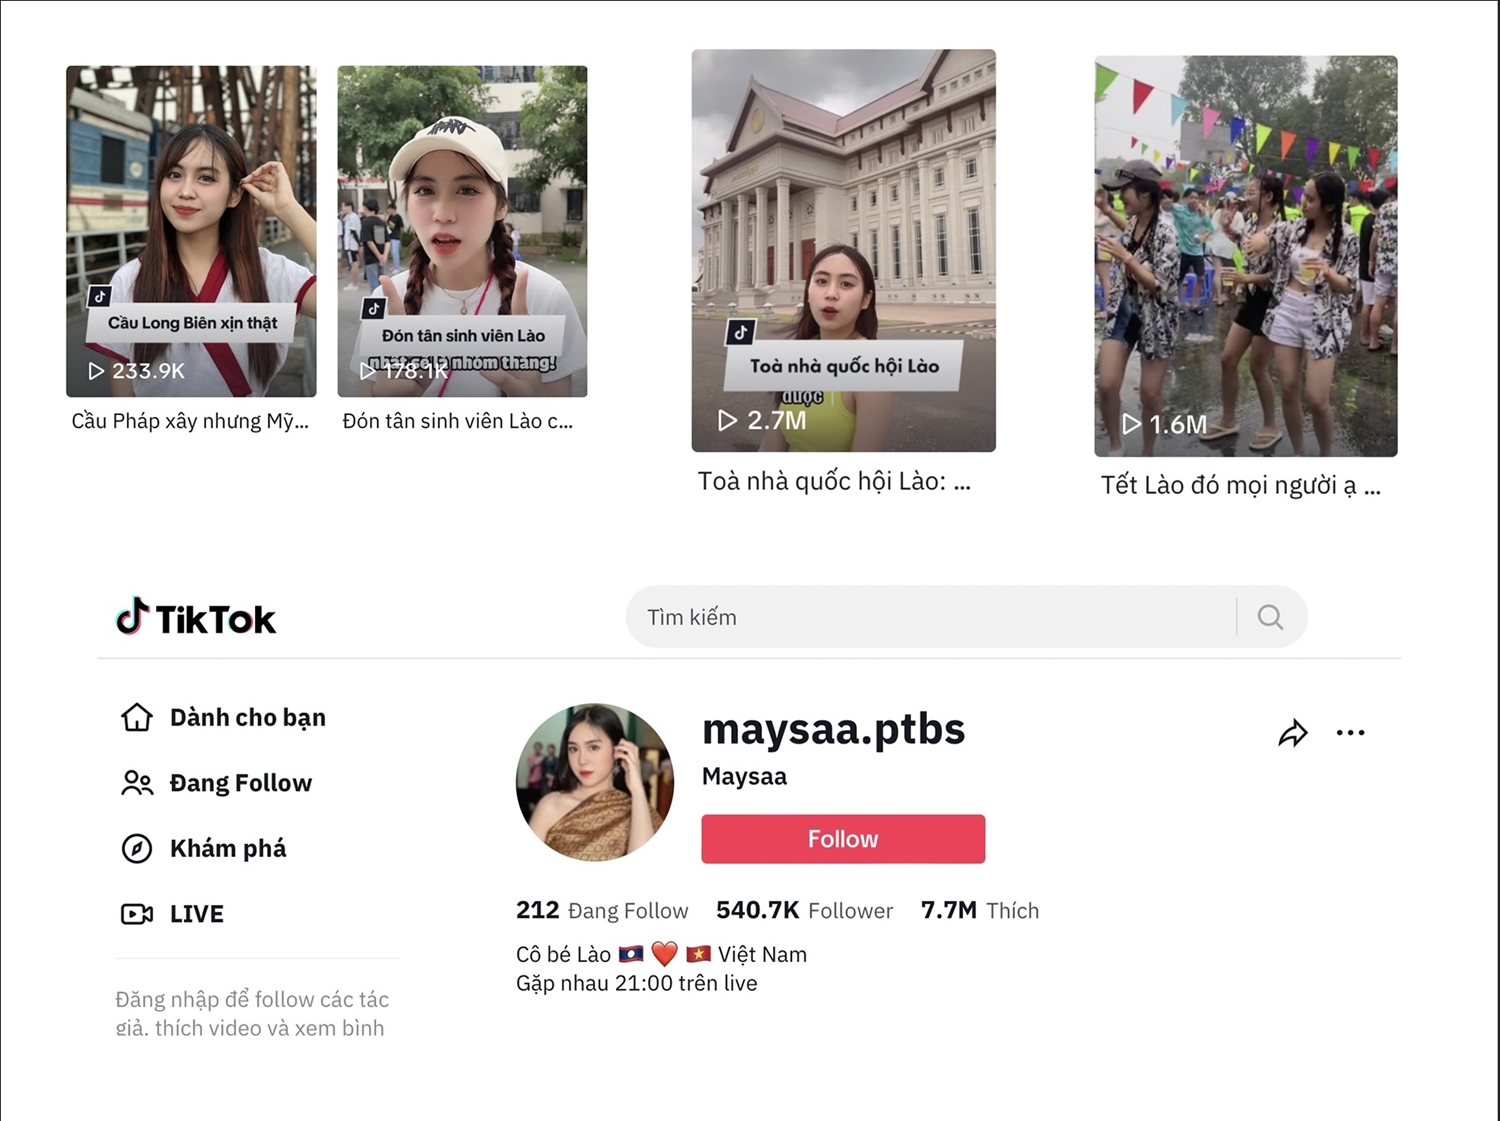 Trang mạng xã hội tiktok của Maysa thu hút hàng triệu lượt thích của khán giả Việt Nam cũng như Quốc tế